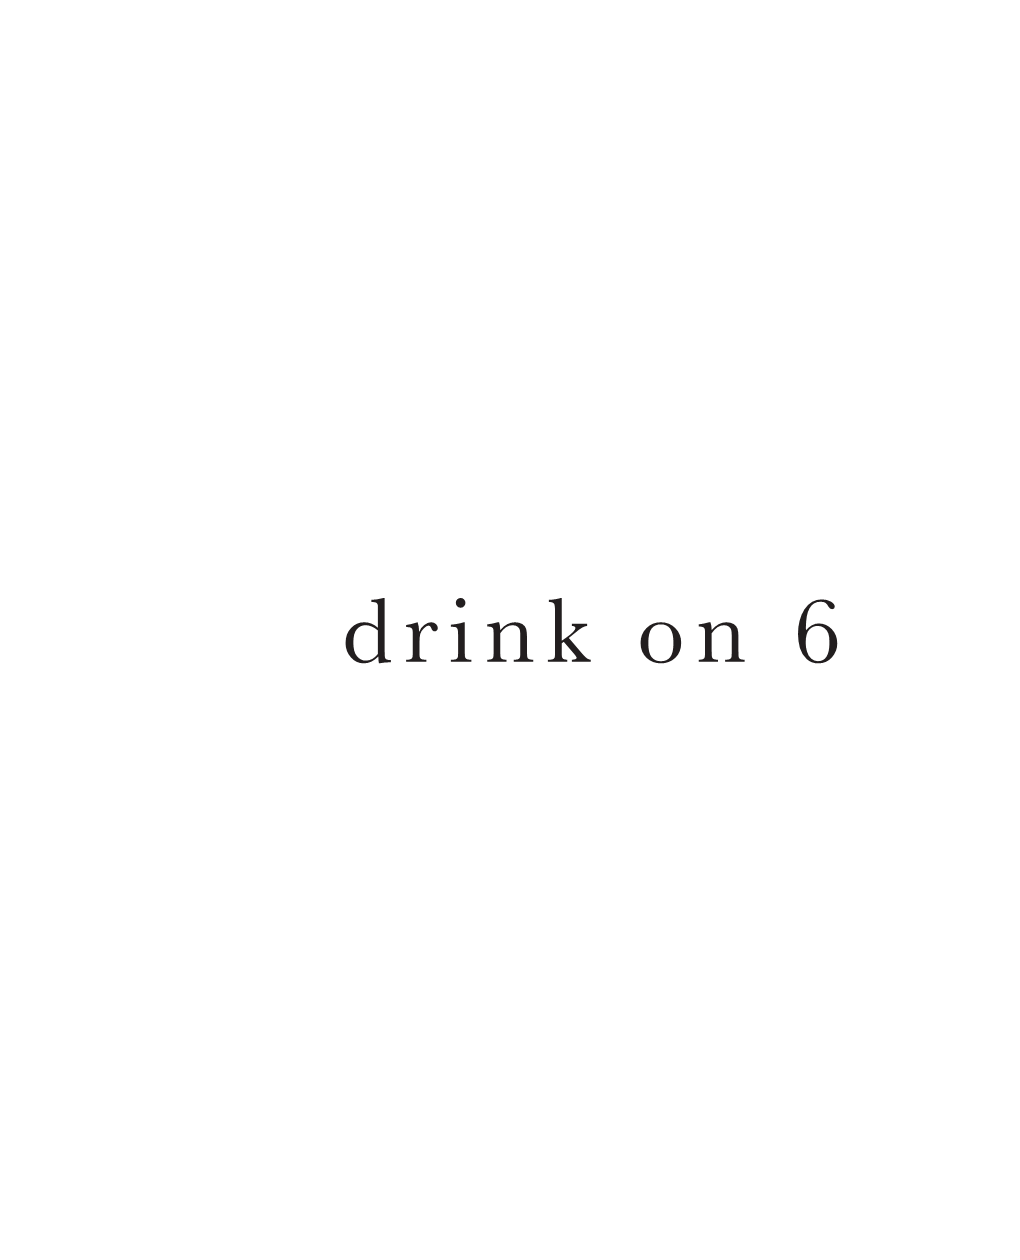 Drink on 6 Menu (137.18